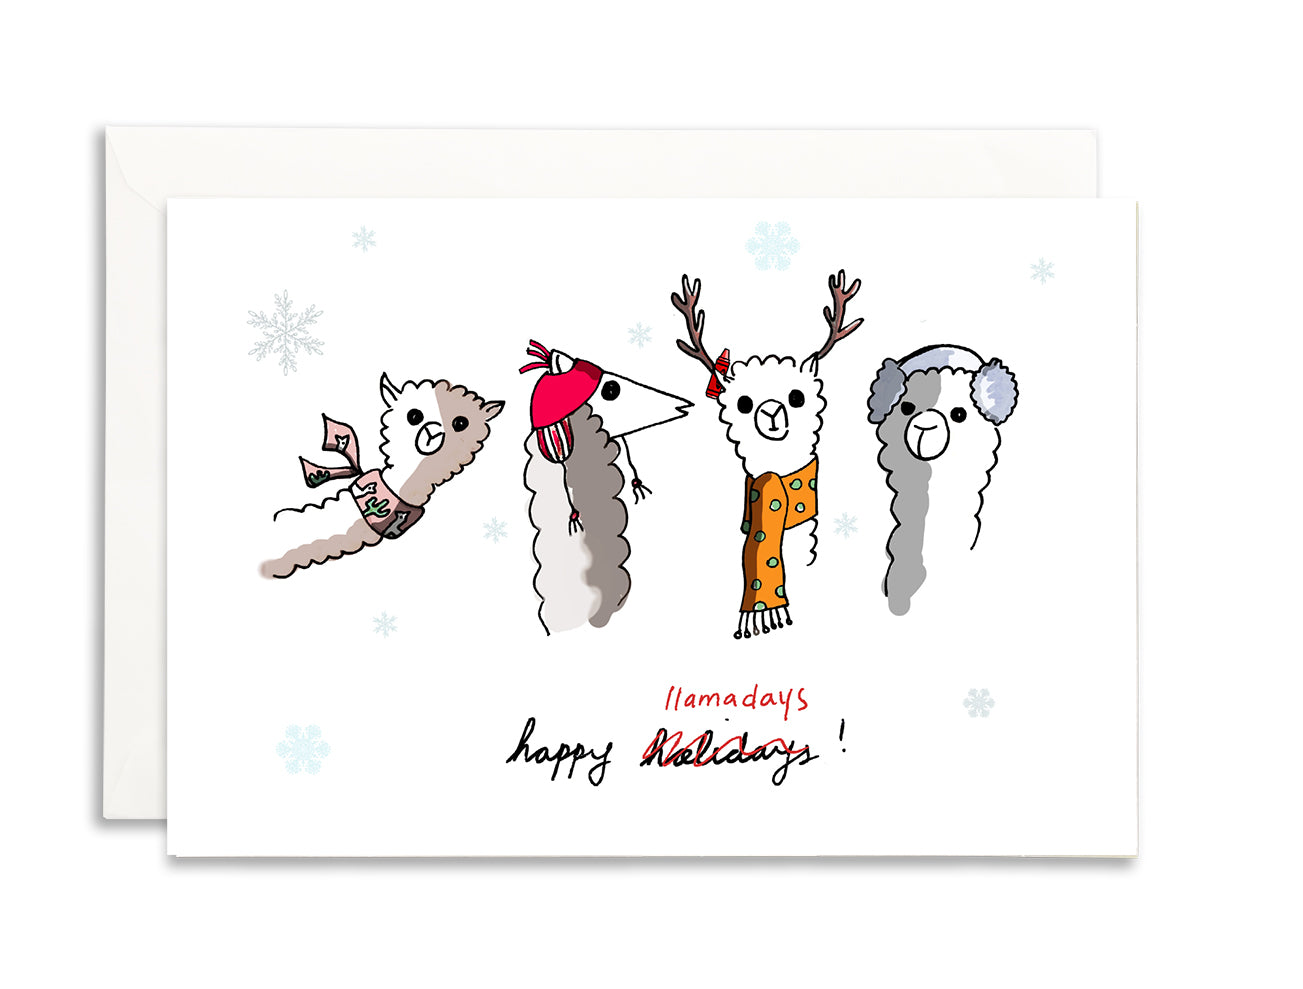 happy llamadays holiday card